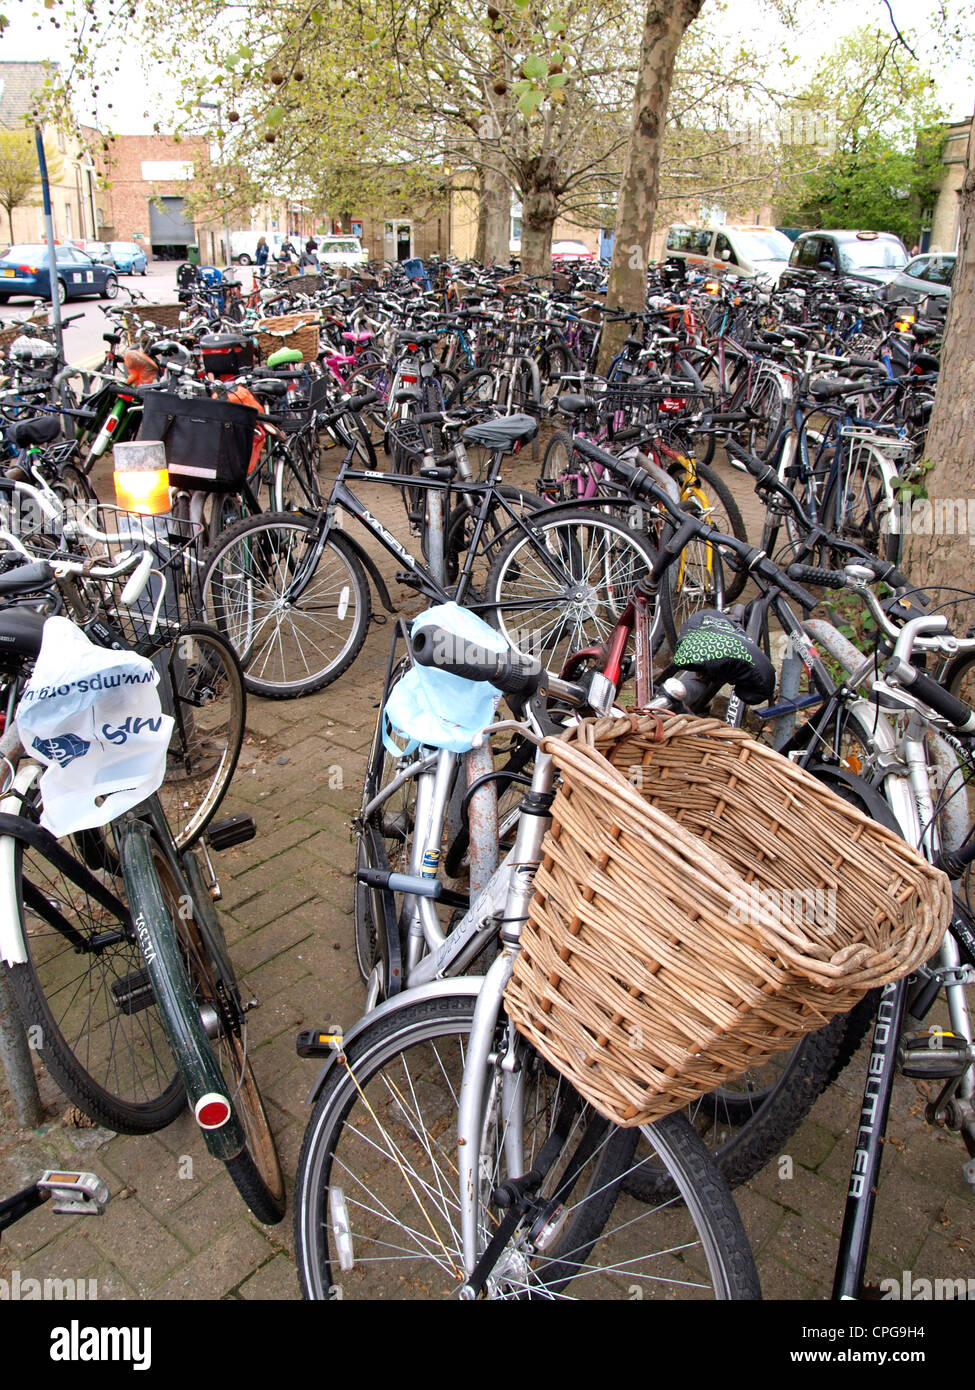 Bicycle park, Cambridge station, UK Stock Photo - Alamy